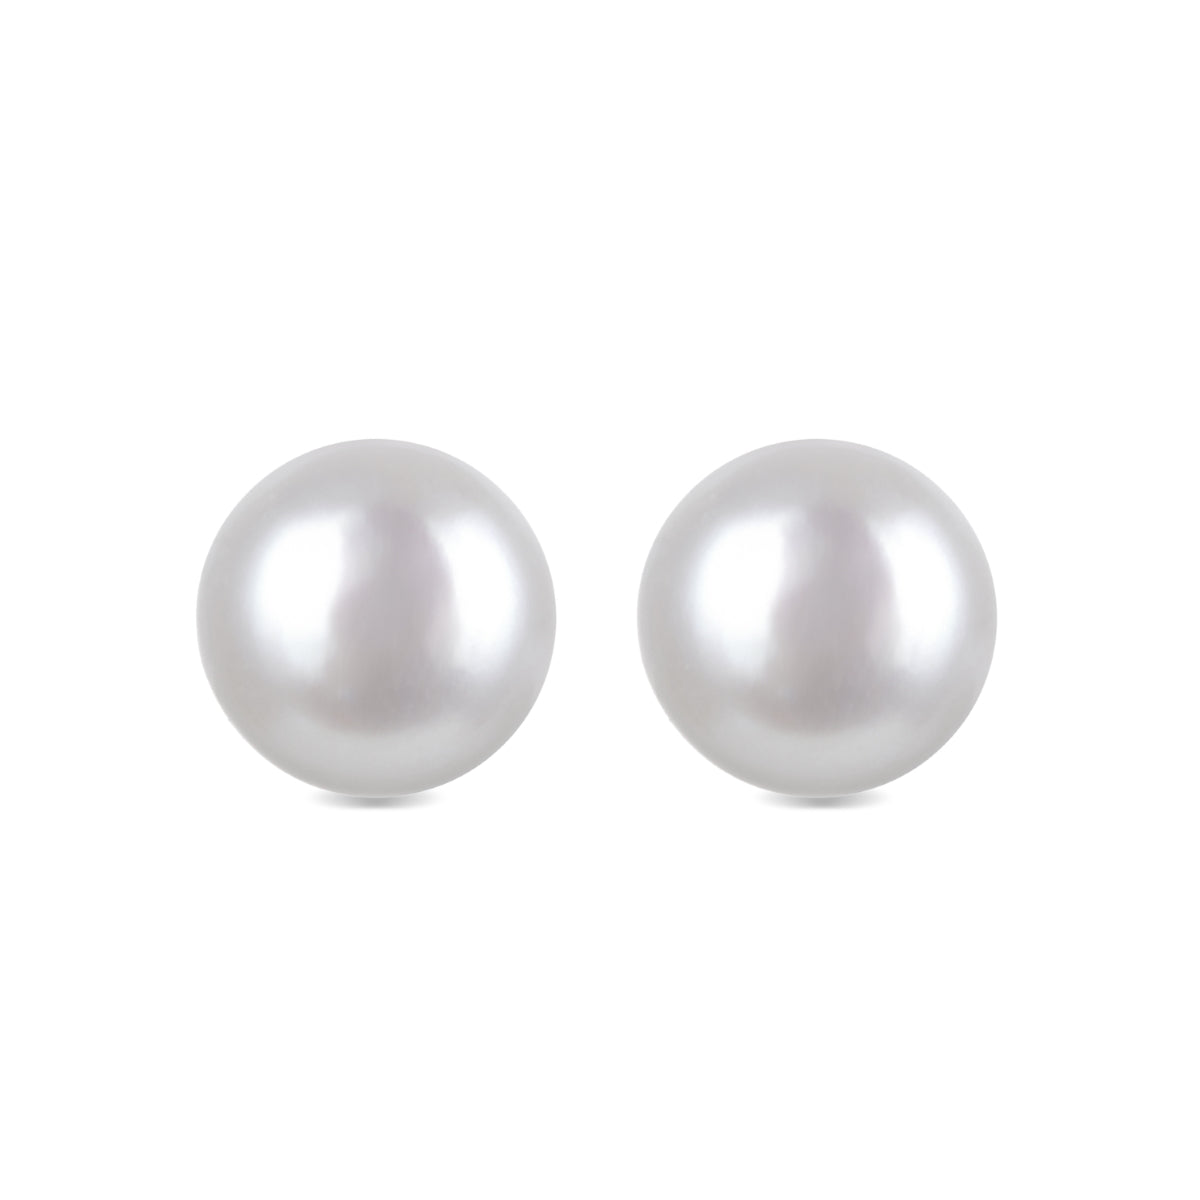 Basic 925 Sterling Silver Earrings